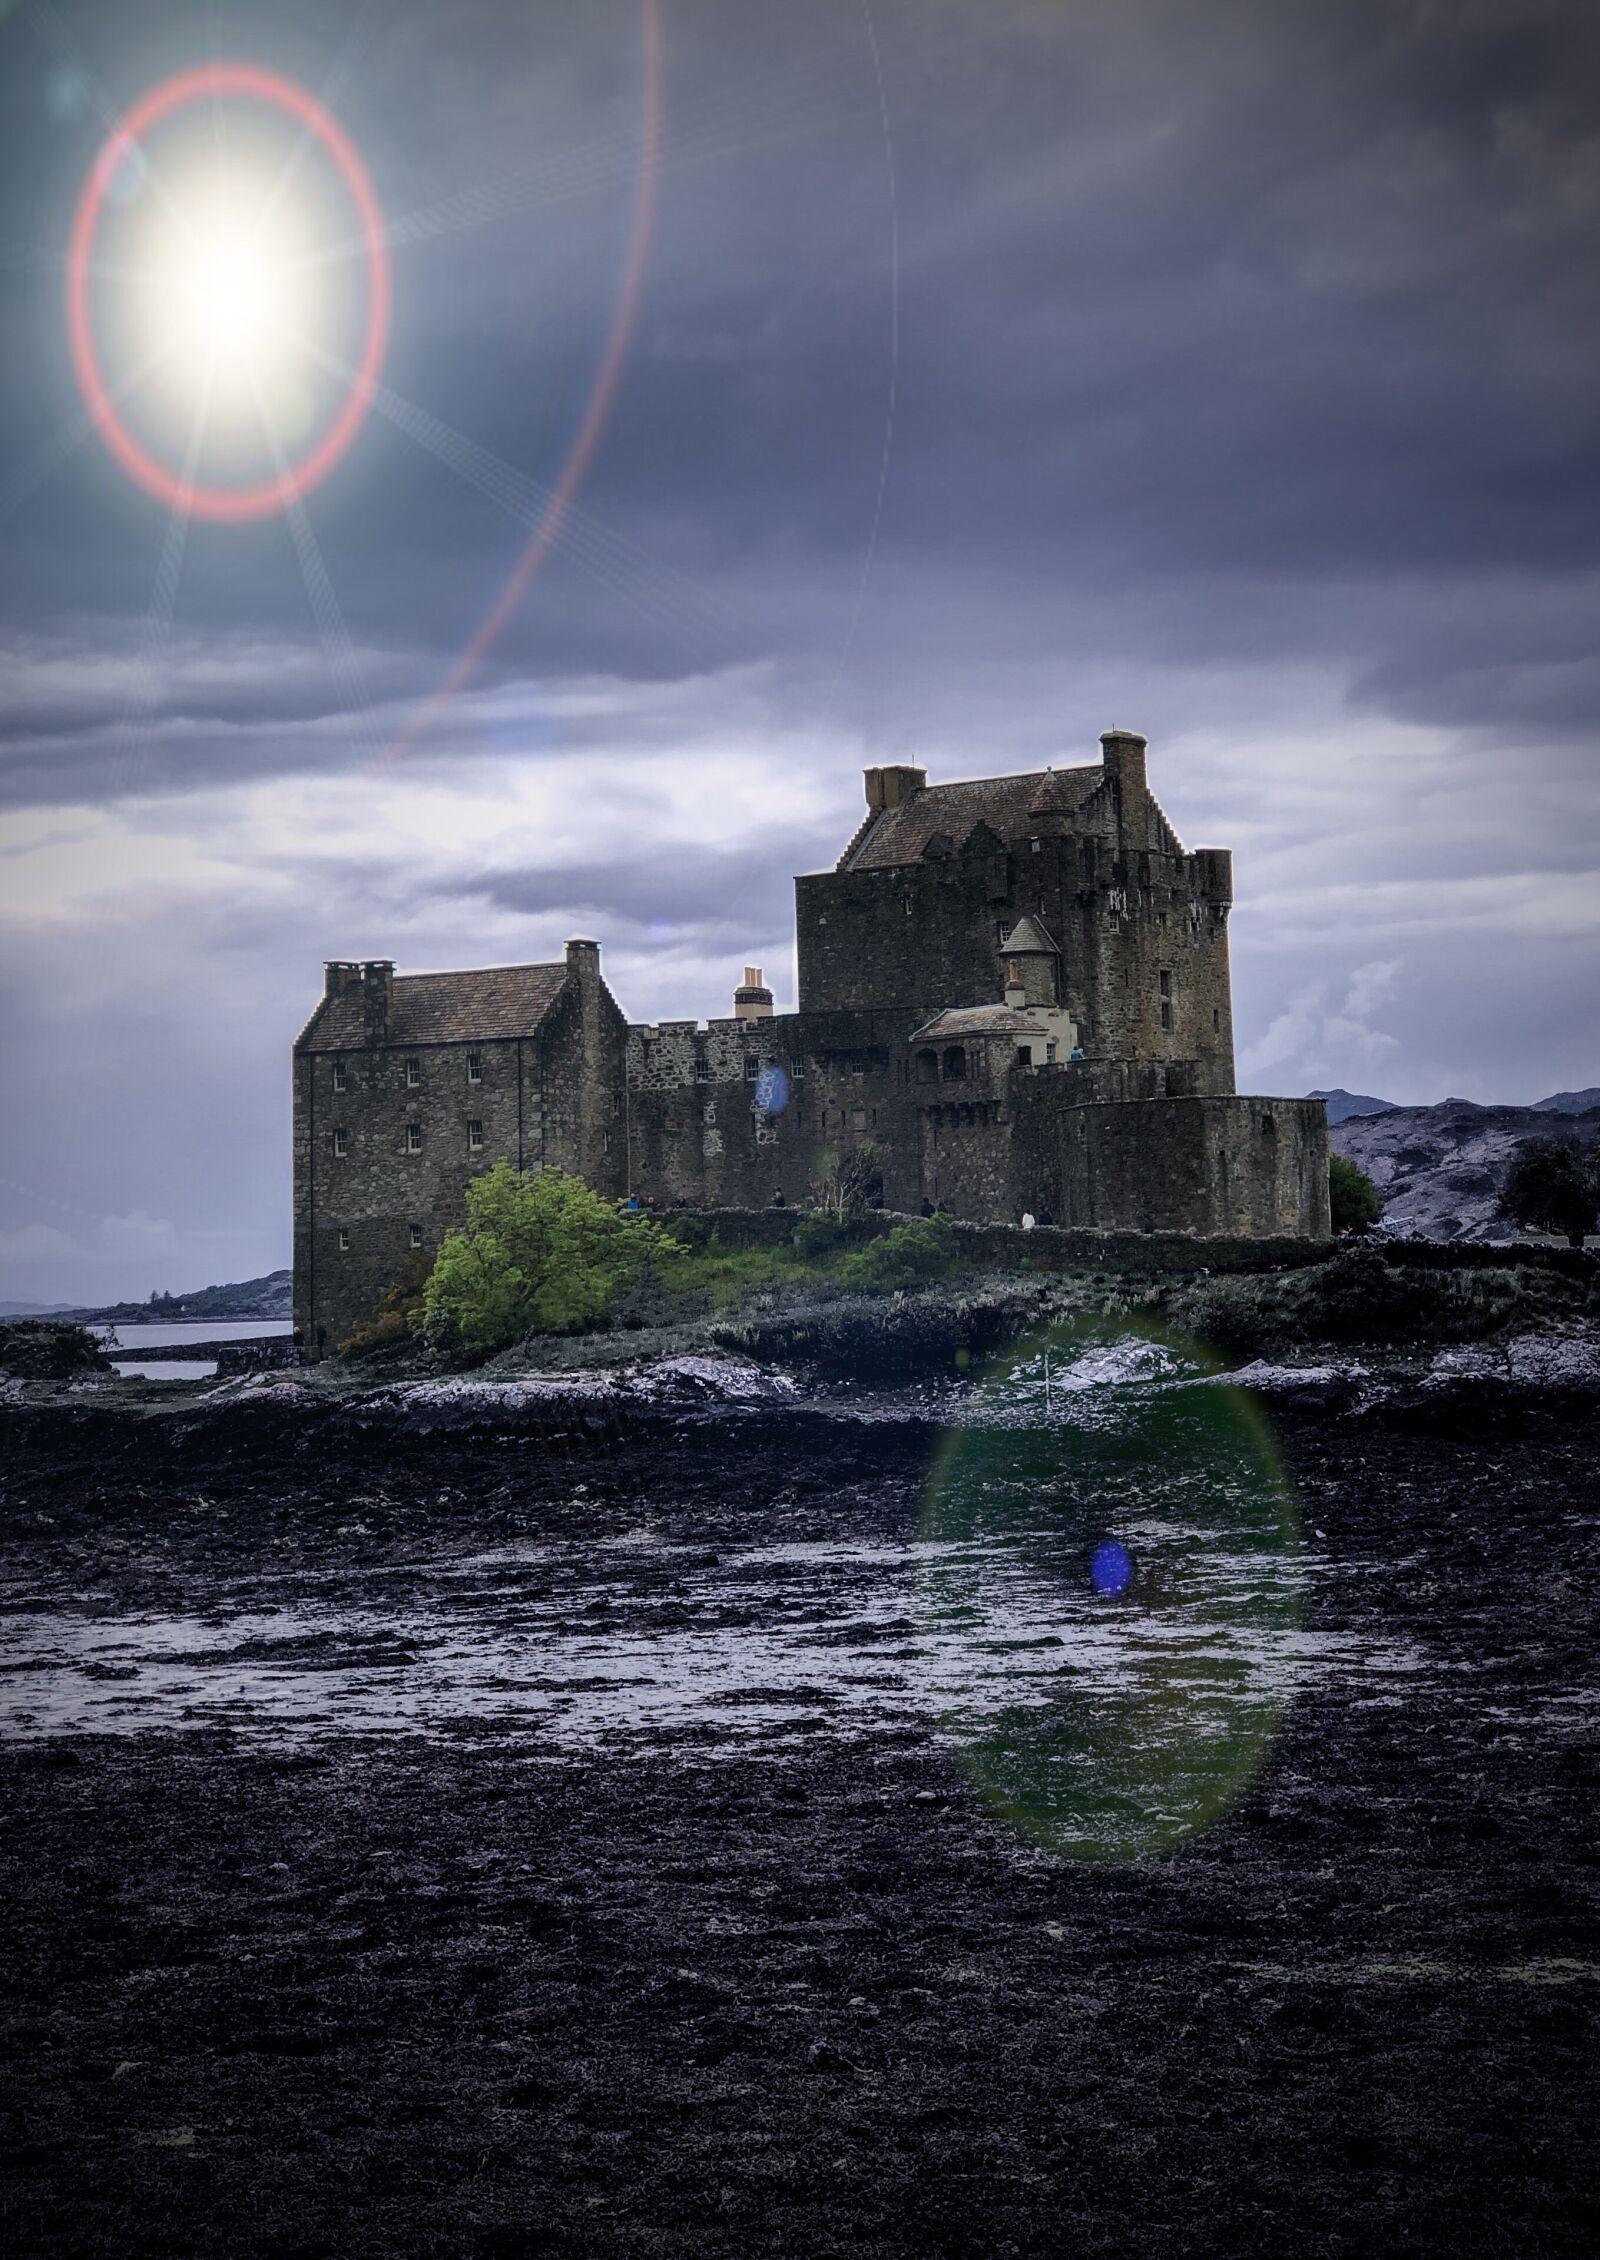 Apple iPhone 8 Plus sample photo. Castle, scotland, landscape photography